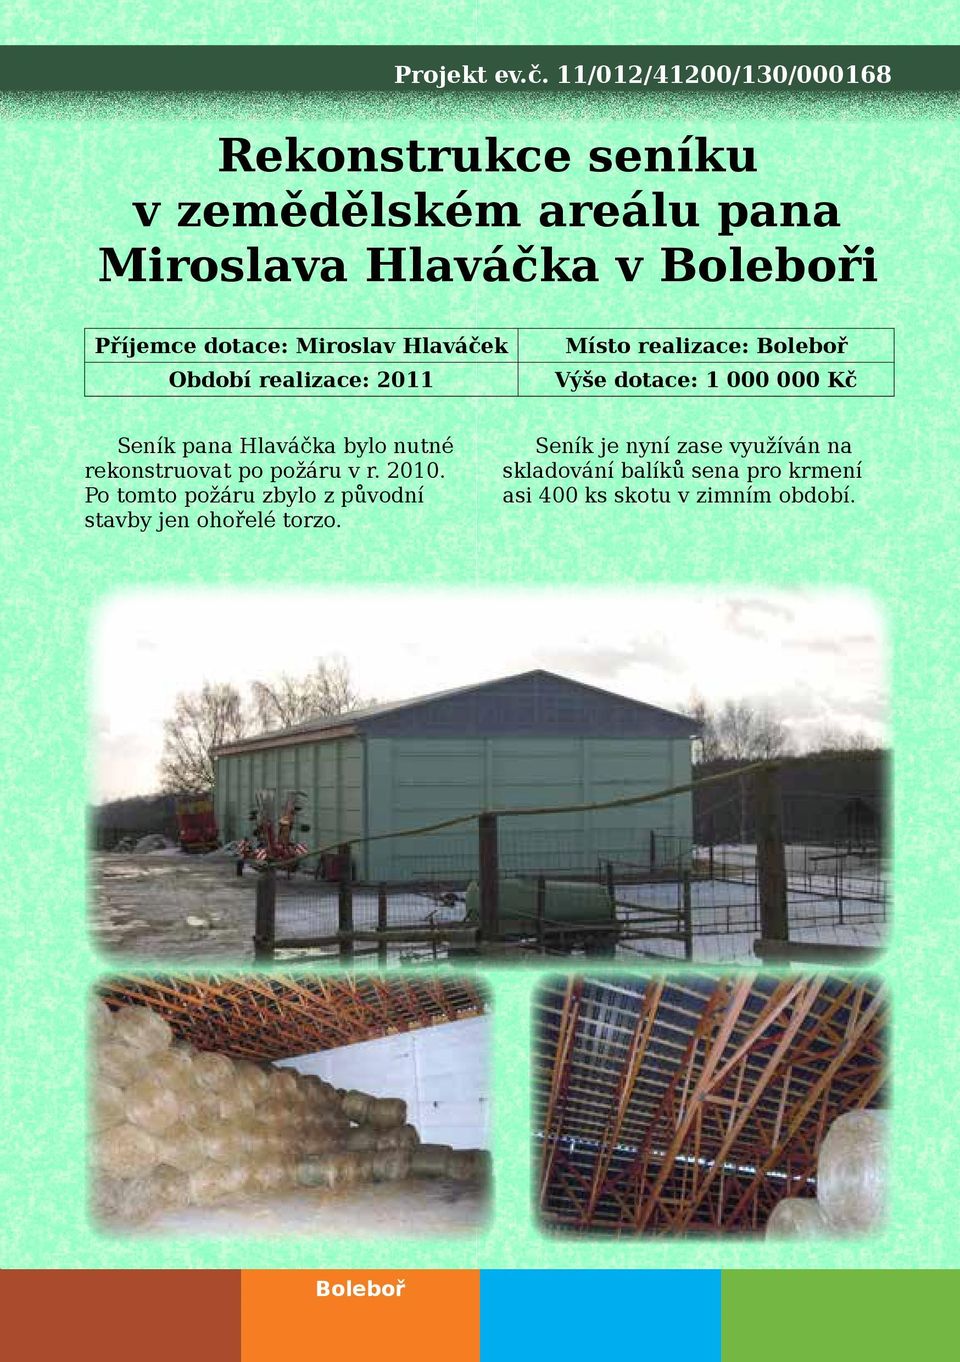 dotace: Miroslav Hlaváček Období realizace: 2011 Místo realizace: Boleboř Výše dotace: 1 000 000 Kč Seník pana